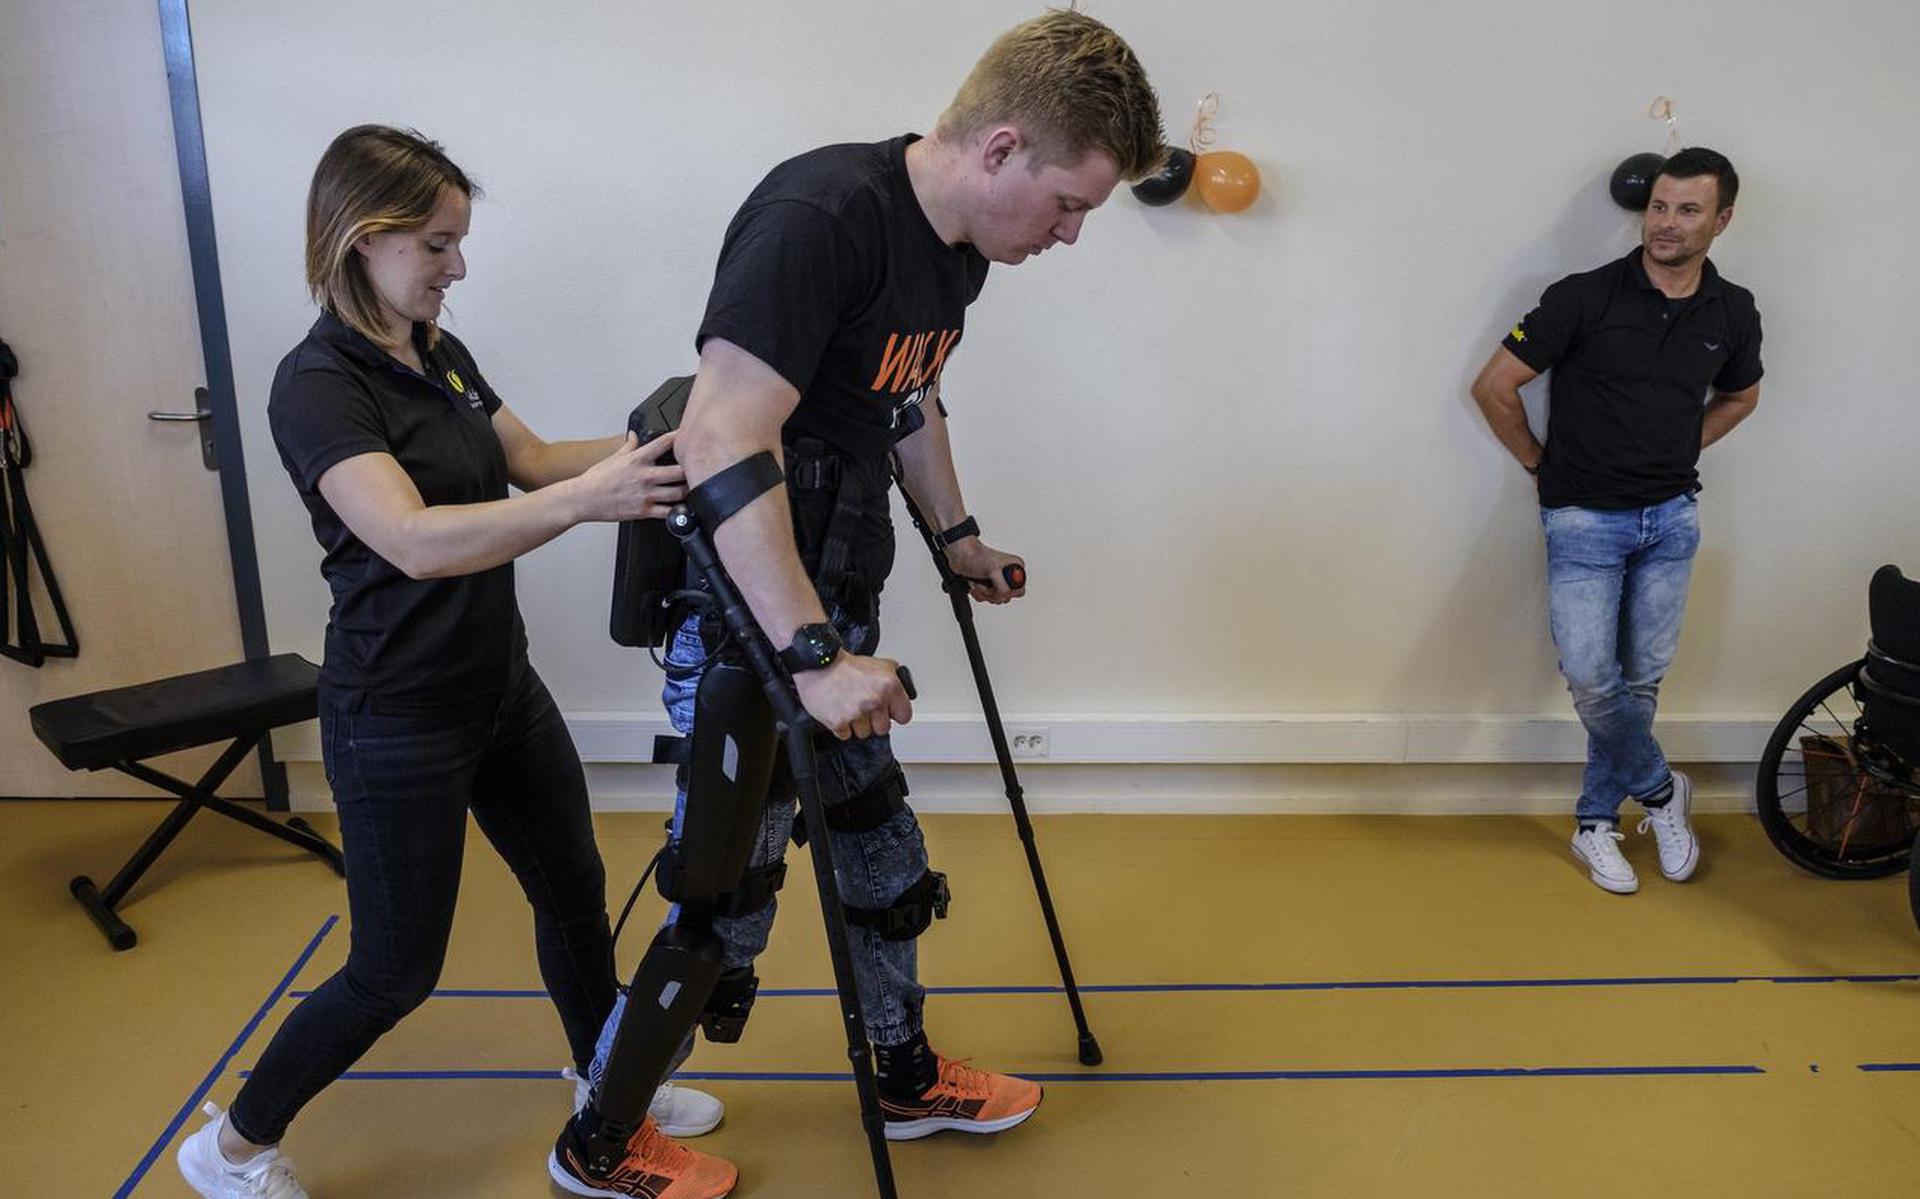 Dennie Jager uit Wagenborgen kan na twee jaar in de rolstoel lopen dankzij het exoskelet. Met zijn begeleidster Mandy Smidts op de hielen liep hij vorig jaar de eerste openbare stappen.